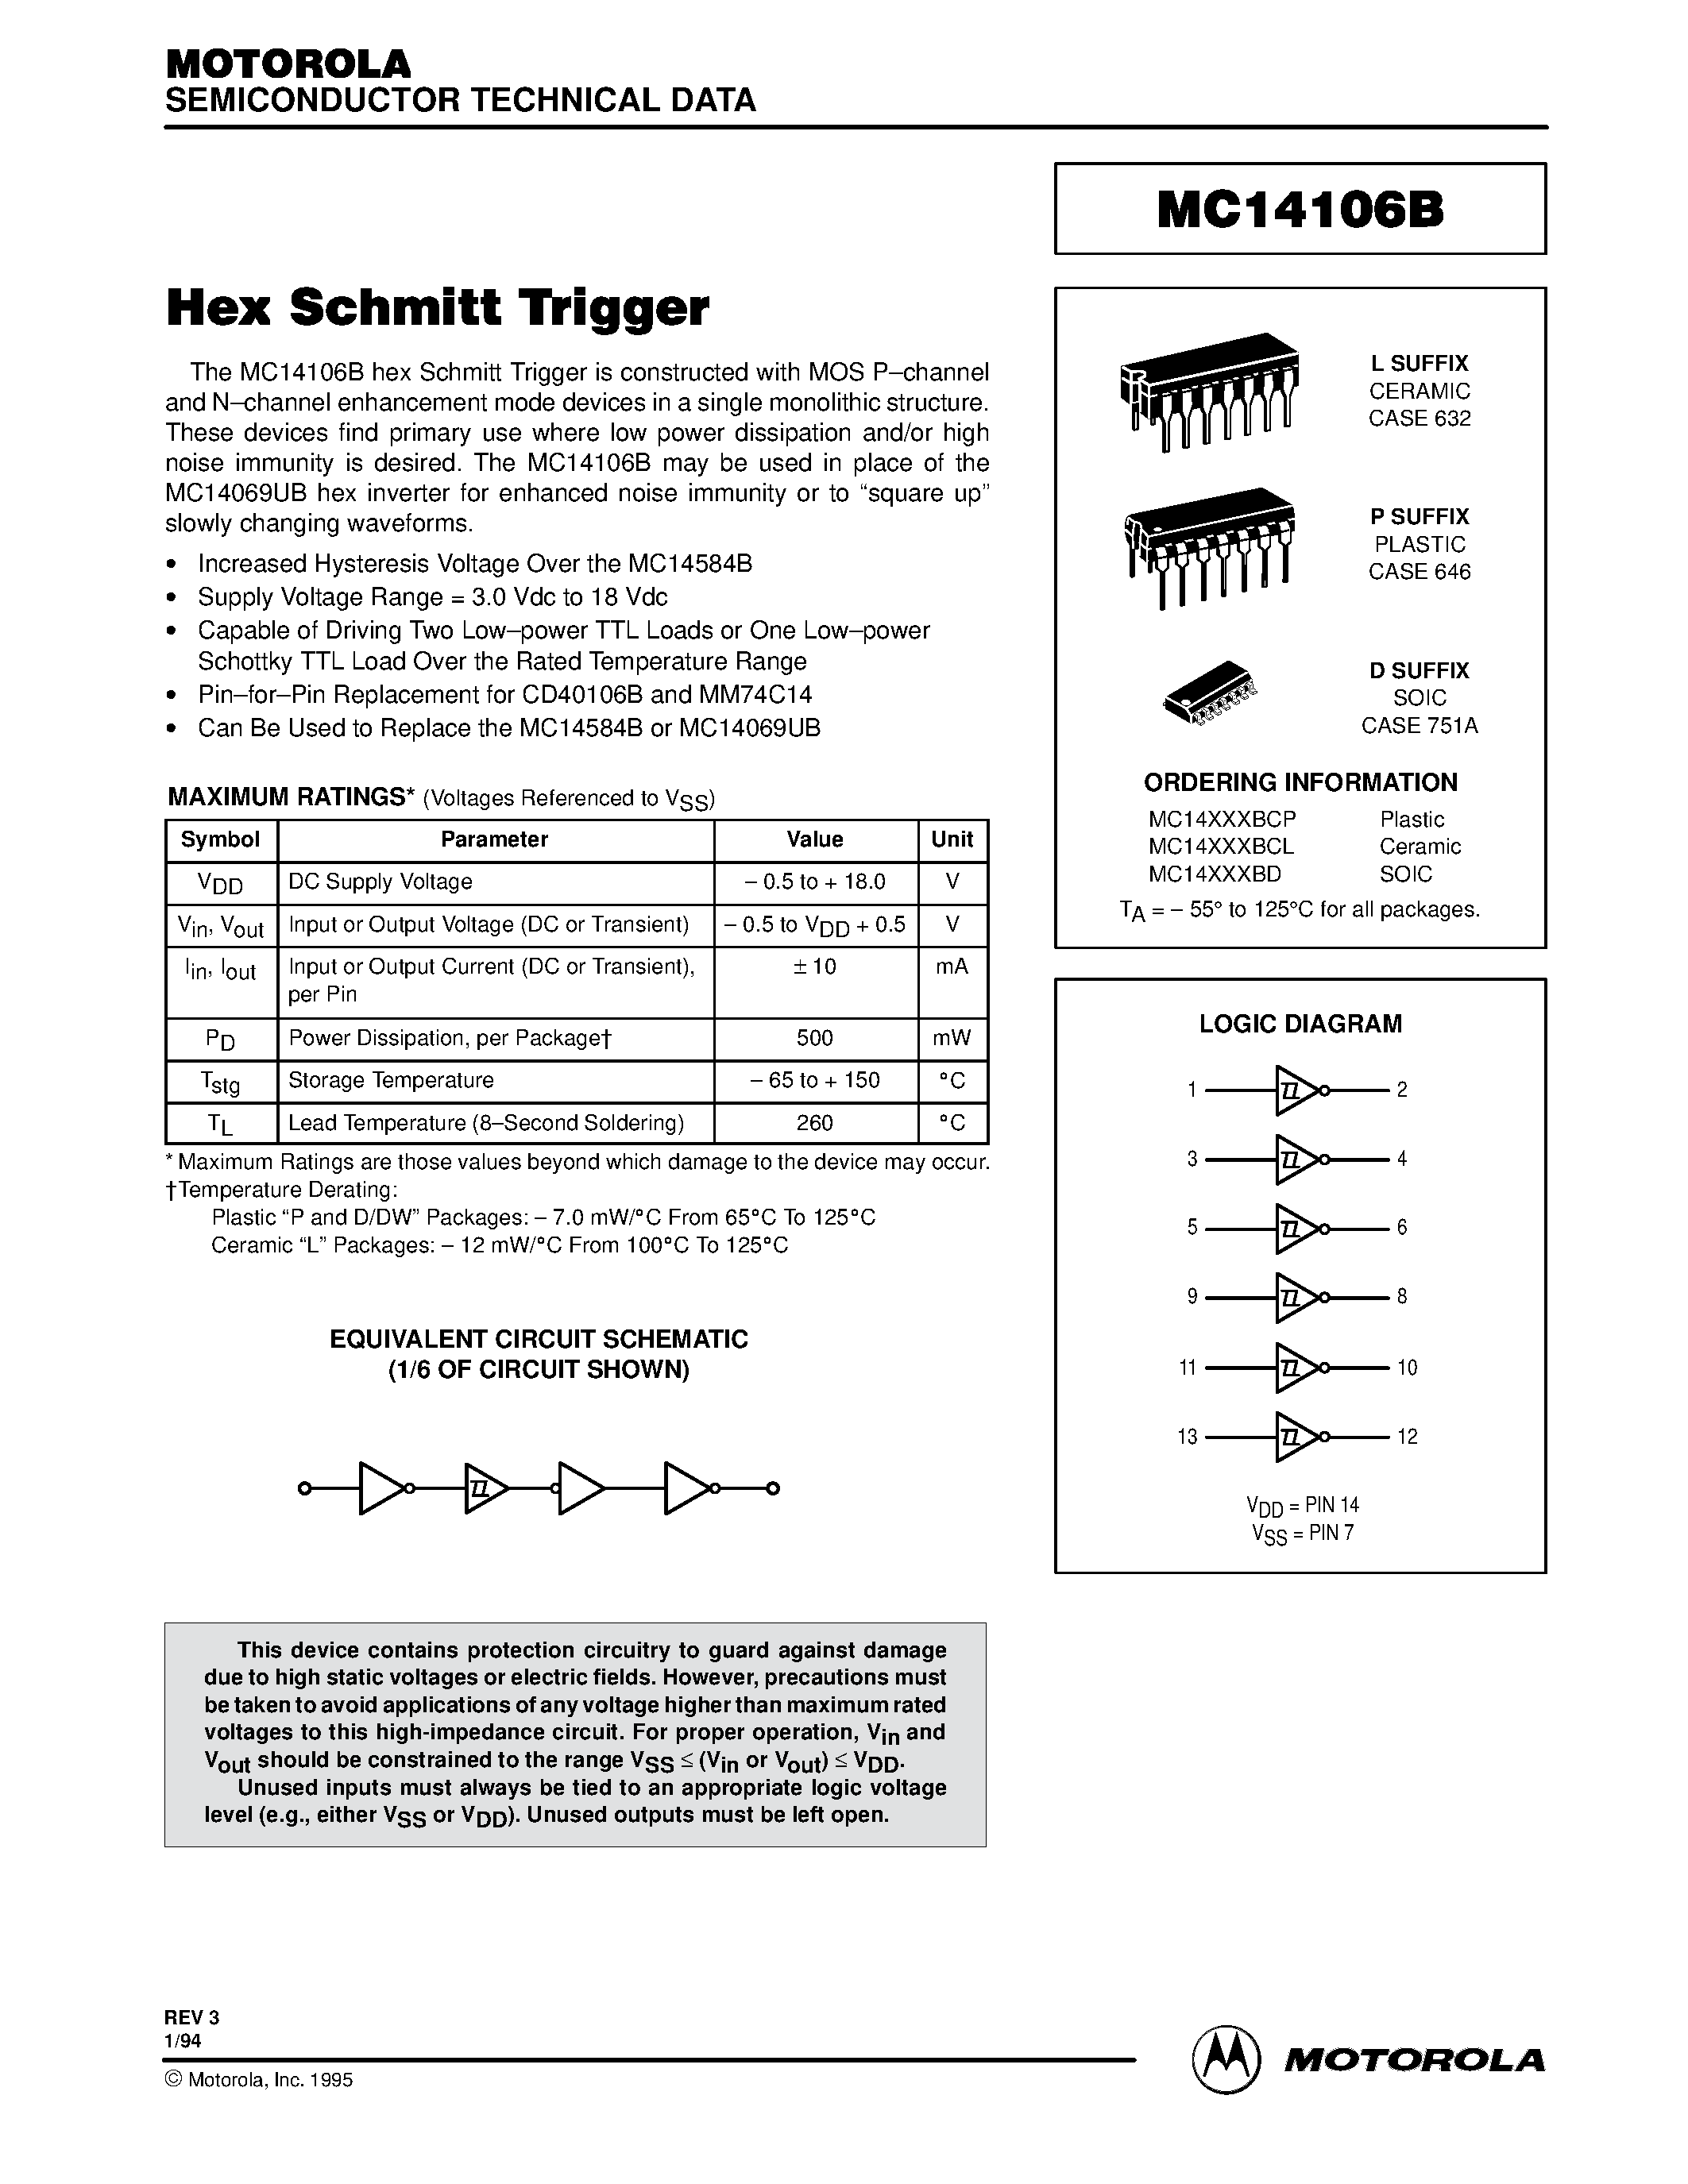 Datasheet MC14106BCL - Hex Schmitt Trigger page 1